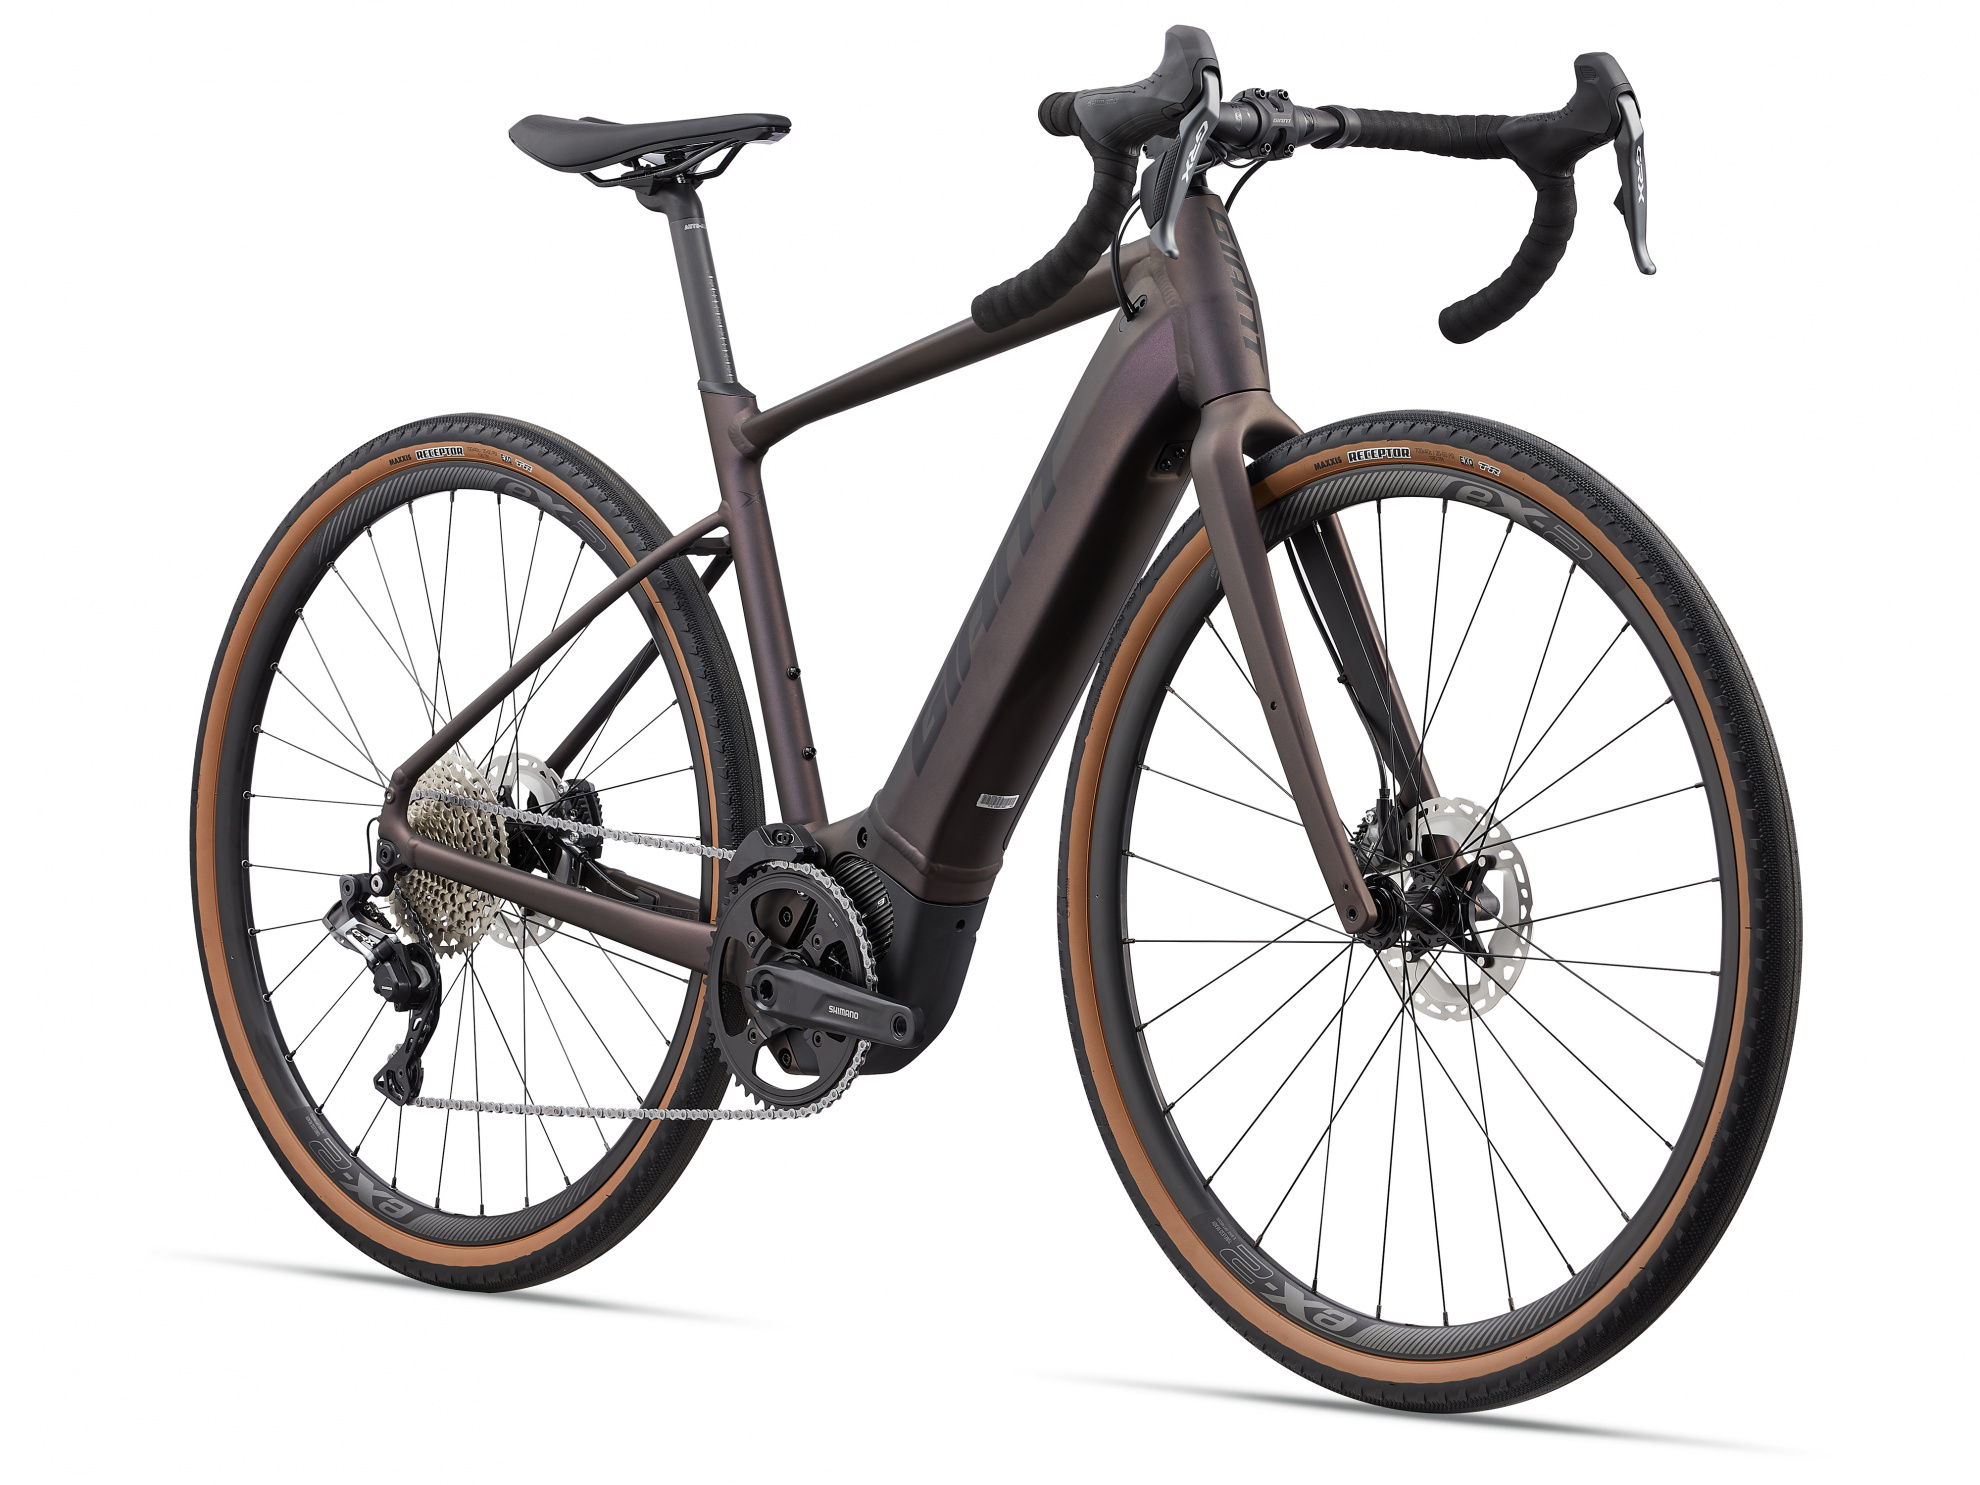 Велосипед Giant REVOLT E+ PRO XR (2021)